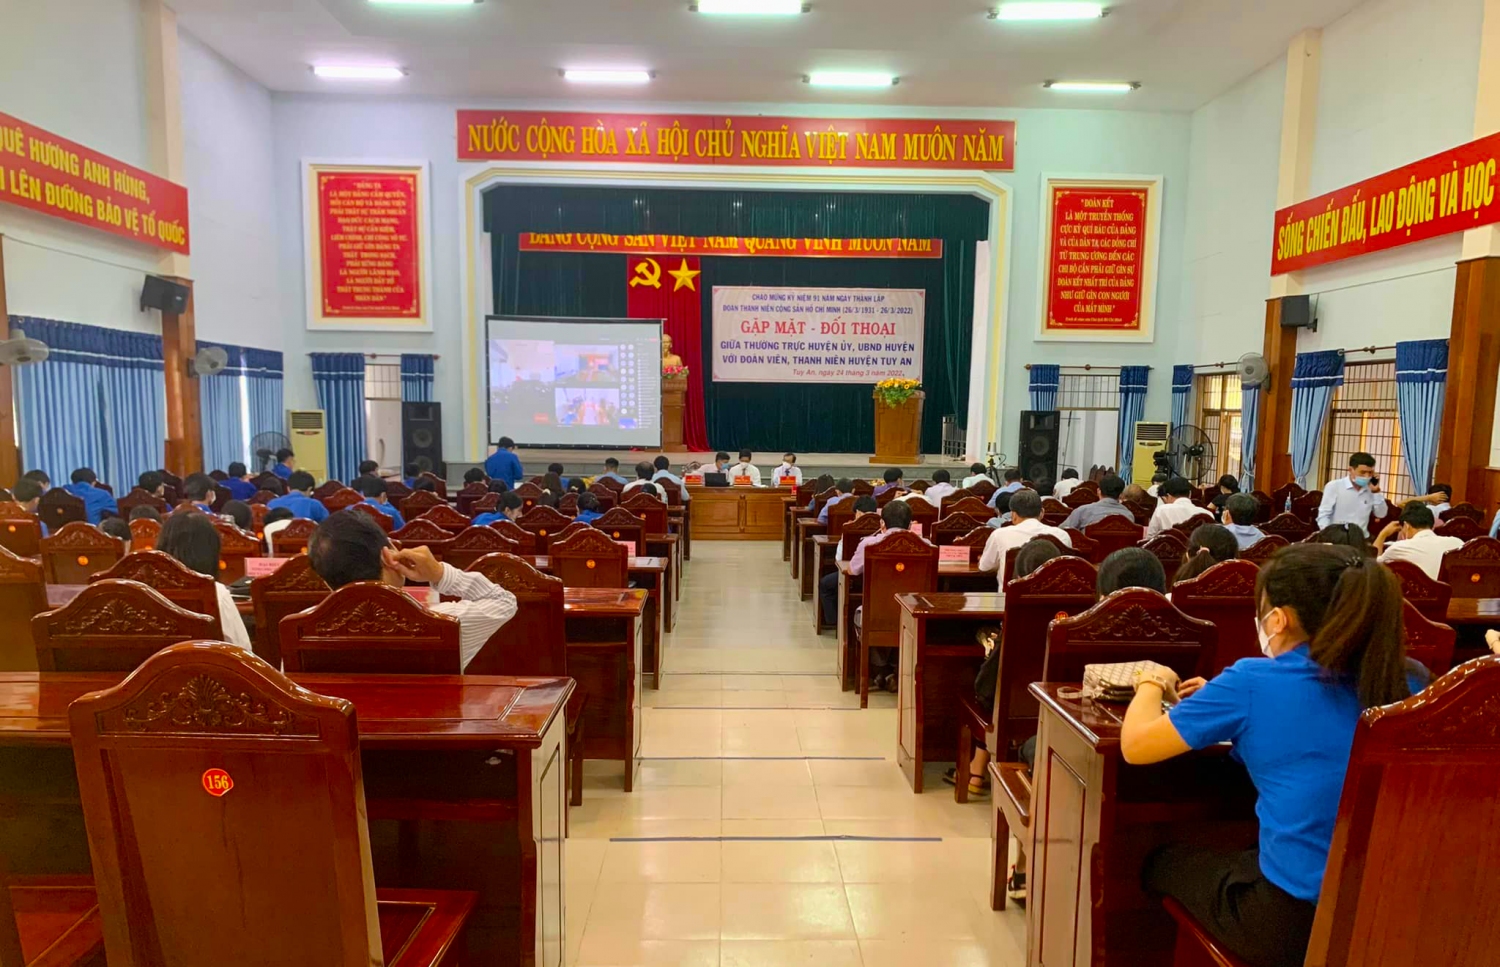 Quang cảnh Lãnh đạo  huyện Tuy An gặp mặt đối thoại với đoàn viên, thanh niên để chuẩn bị Đại hội Đoàn cấp huyện